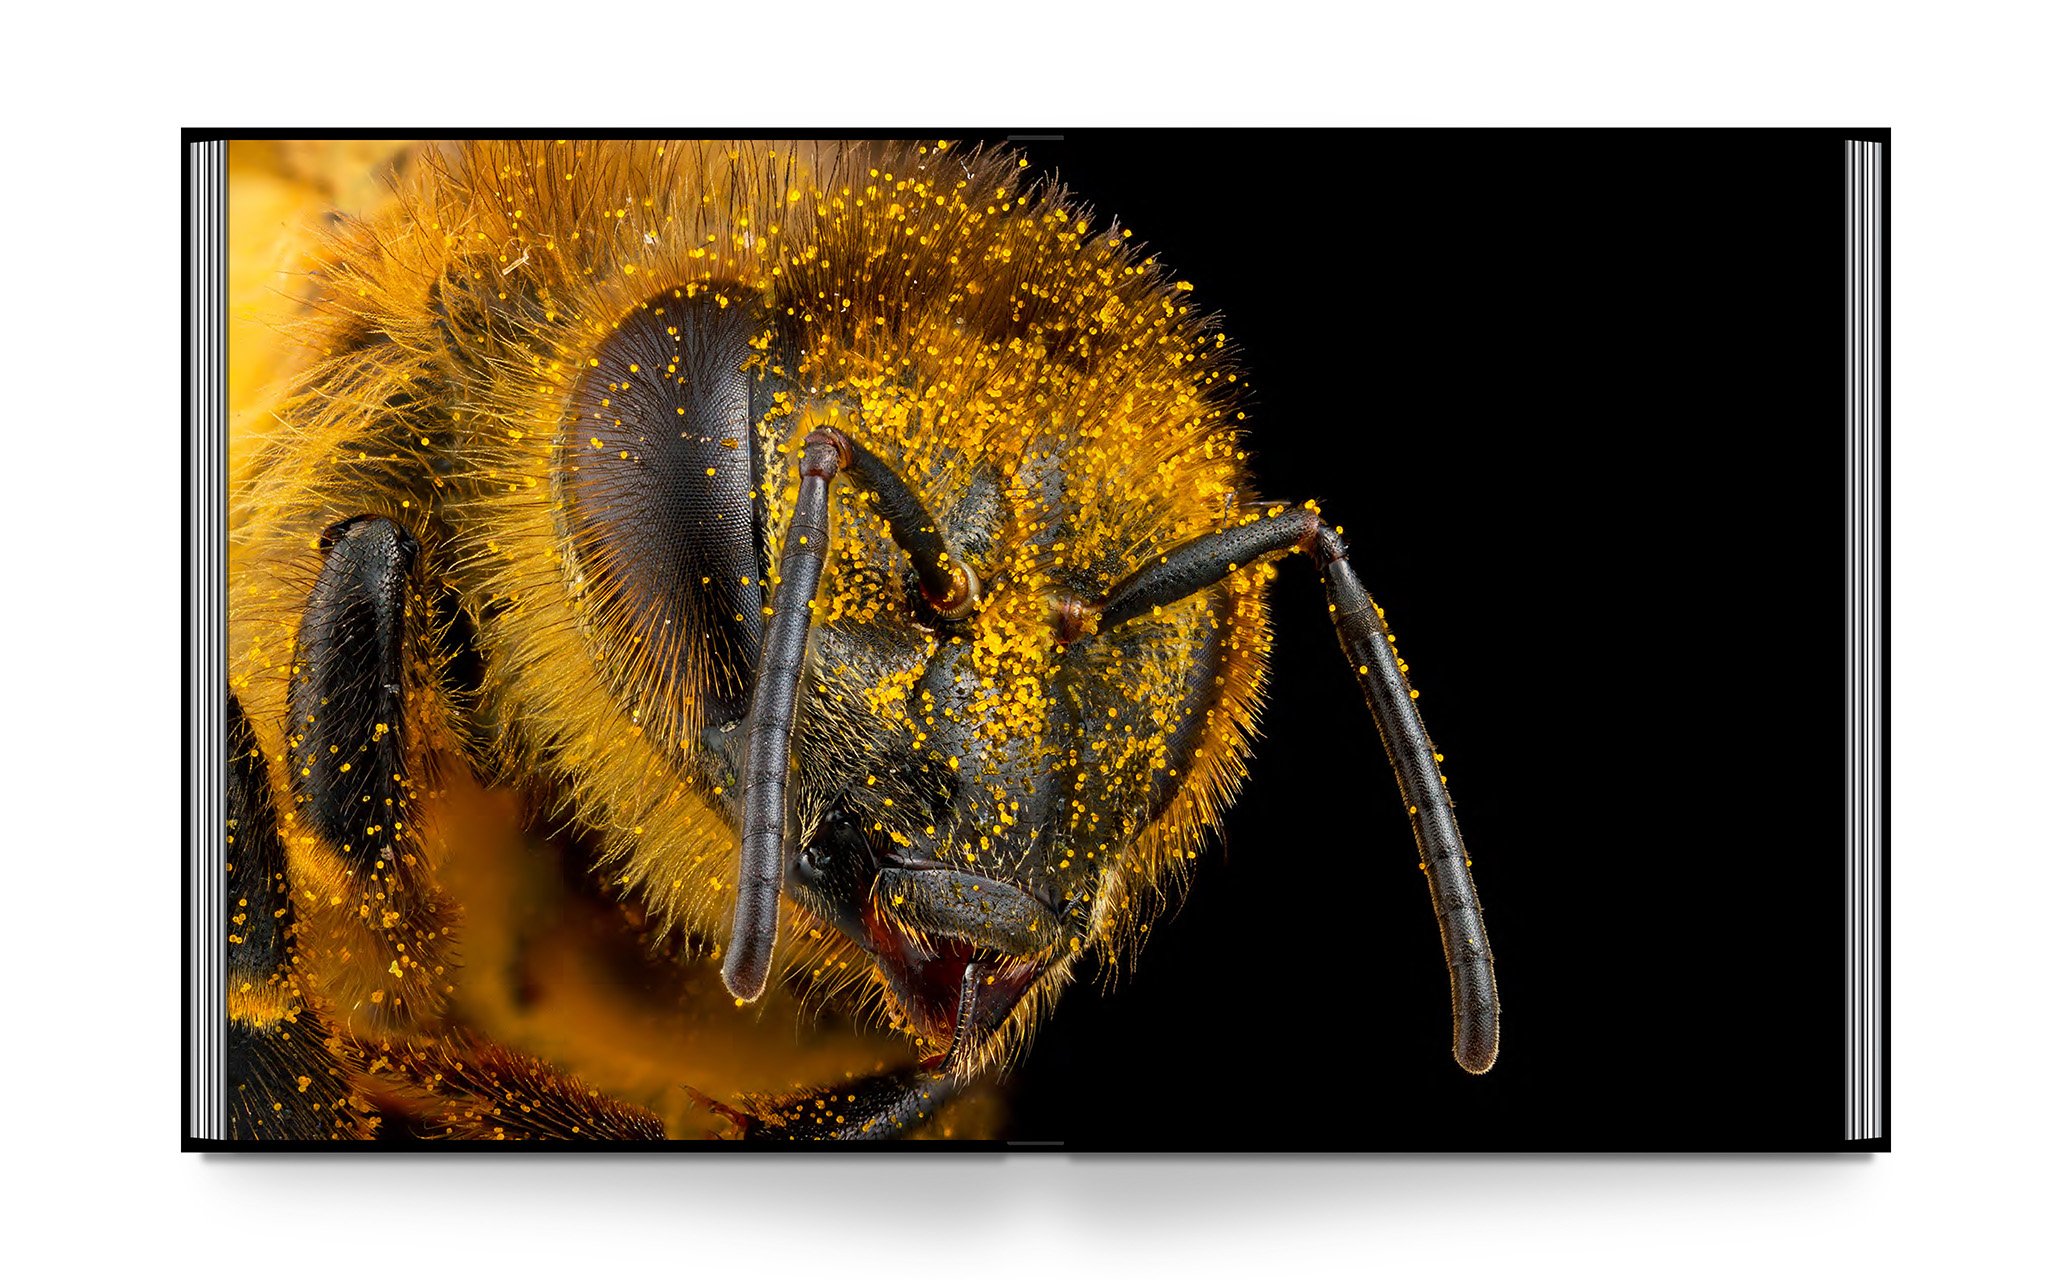 Seduction of the Honeybee_Int_20Oct23_B&R_LR 22.jpg